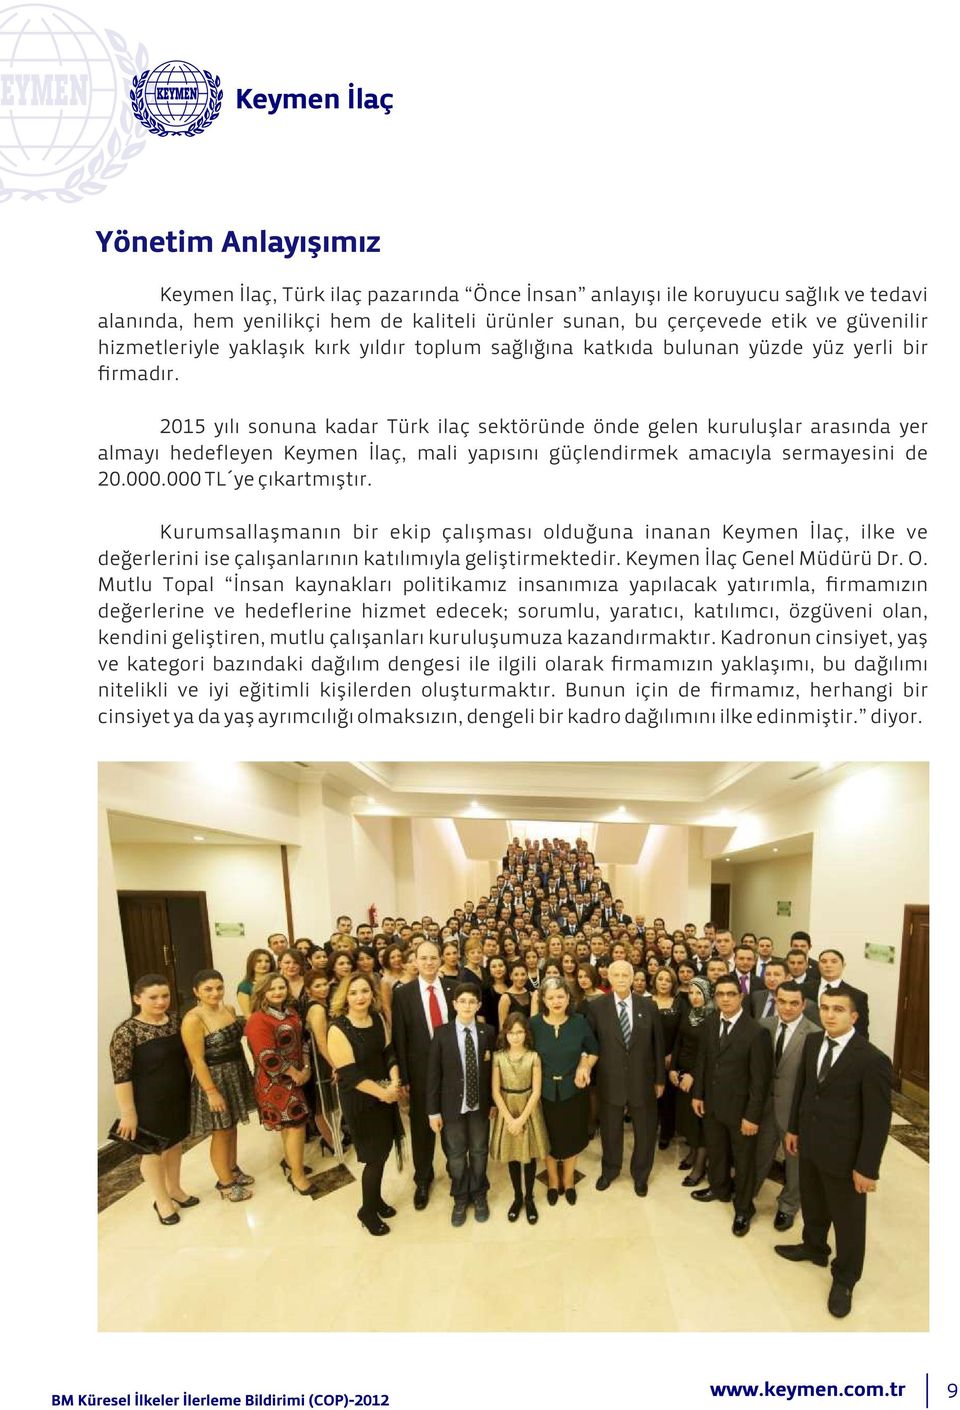 2015 yılı sonuna kadar Türk ilaç sektöründe önde gelen kuruluşlar arasında yer almayı hedefleyen Keymen İlaç, mali yapısını güçlendirmek amacıyla sermayesini de 20.000.000 TL ye çıkartmıştır.